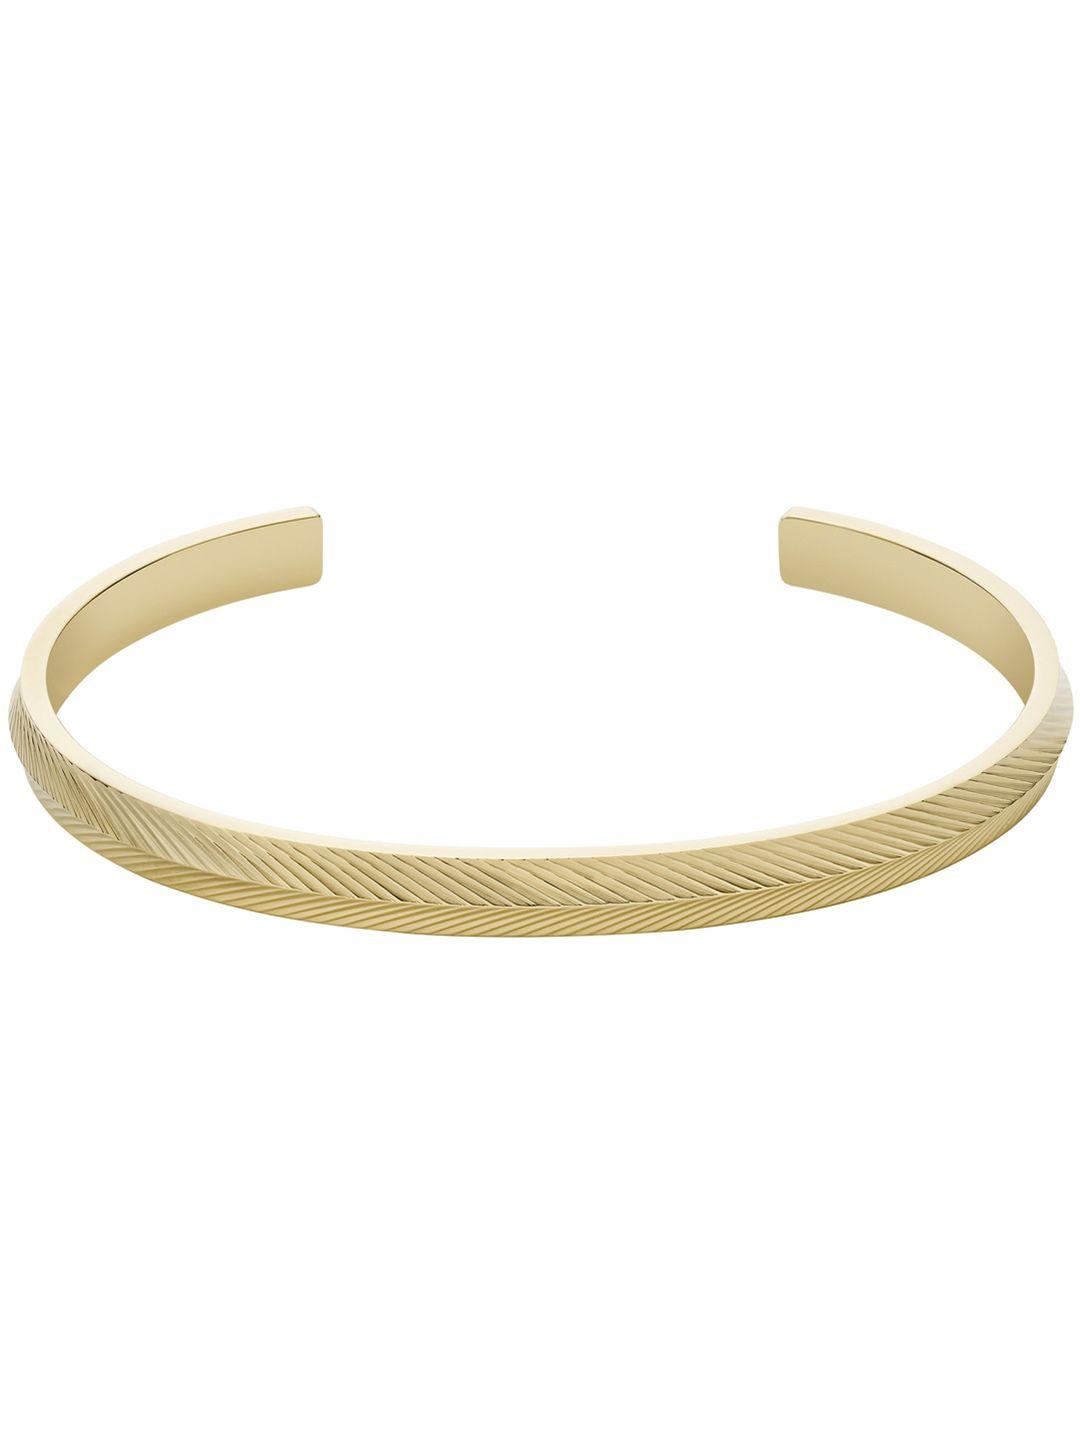 fossil sadie women gold-toned bangle-style bracelet